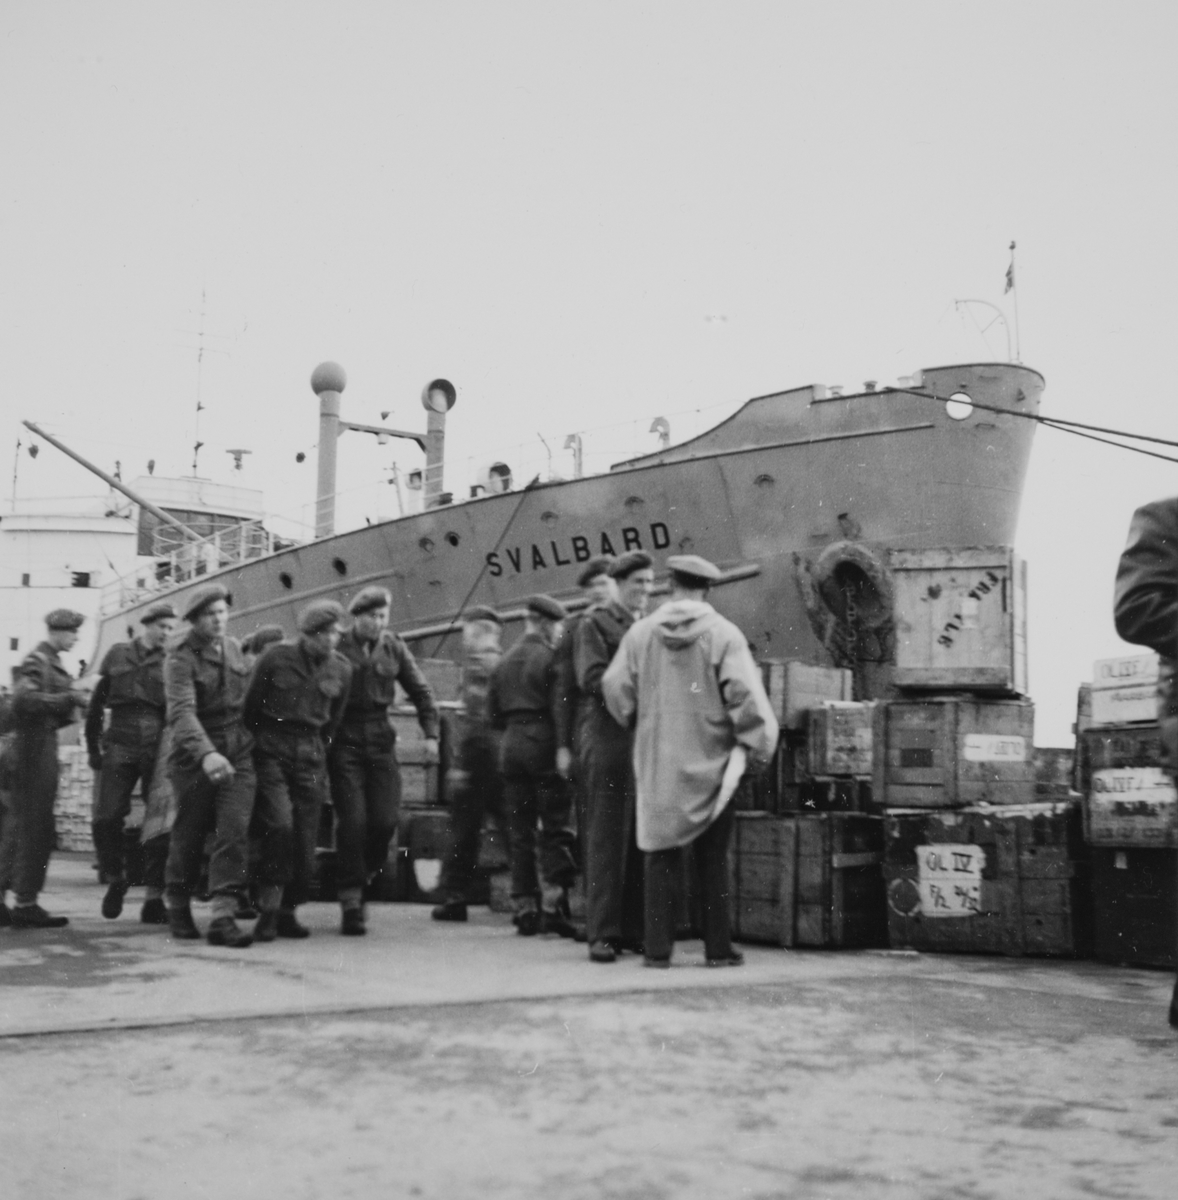 Soldater og forsyninger på kaien, med "Svalbard" i bakgrunnen. Se også FMU.403046.